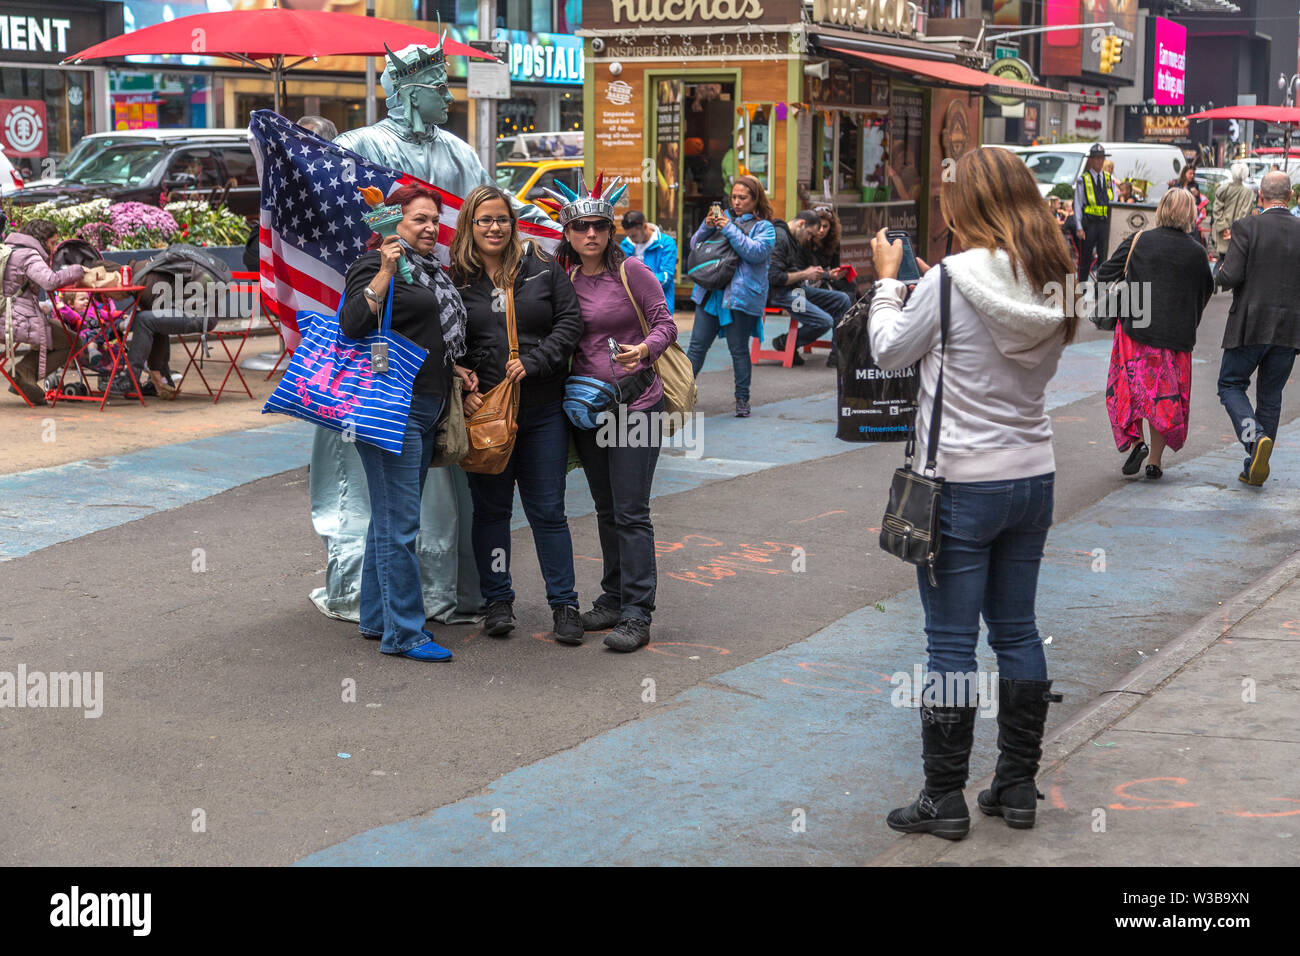 New York, NY, USA - 16 octobre 2013 : autour de prise de photos et vos autoportraits à la zone de Times Square, Manhattan Banque D'Images